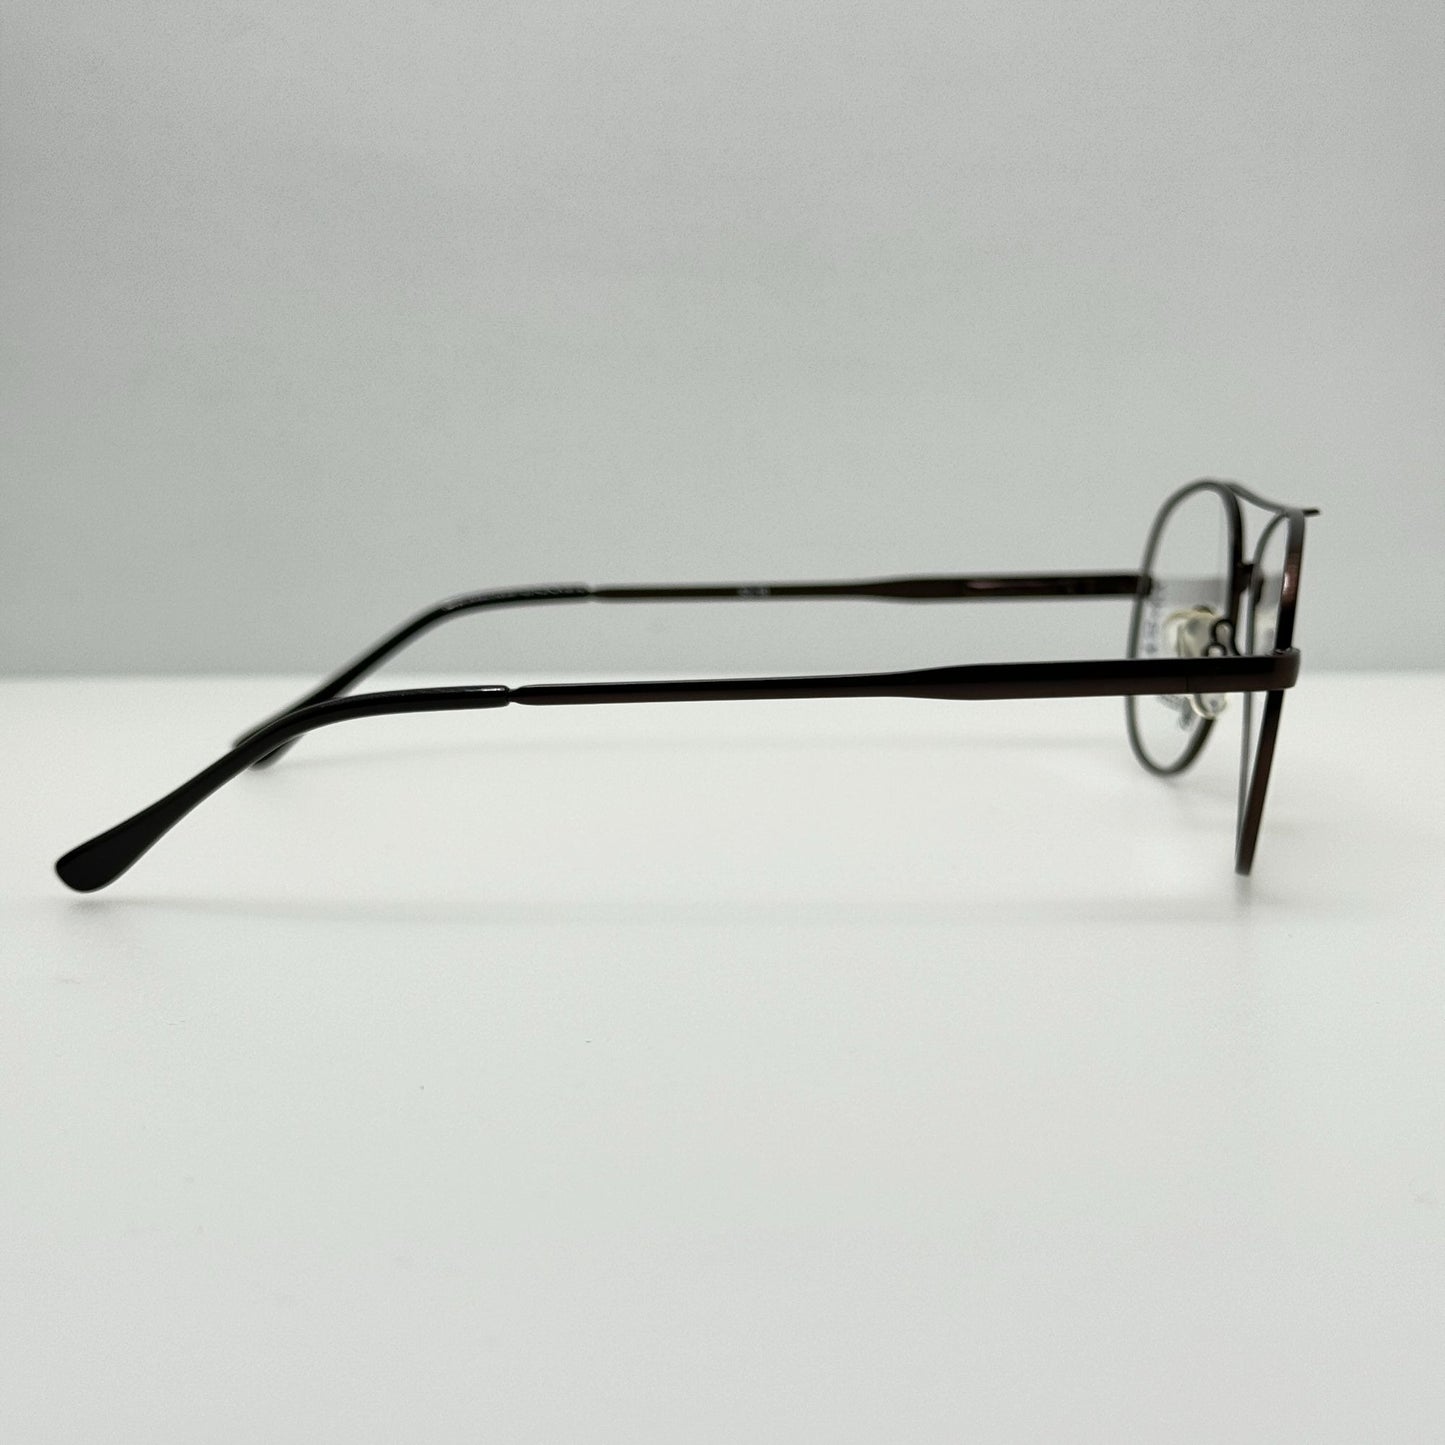 Modern Eyeglasses Eye Glasses Frames Hunter Brown 53-16-140